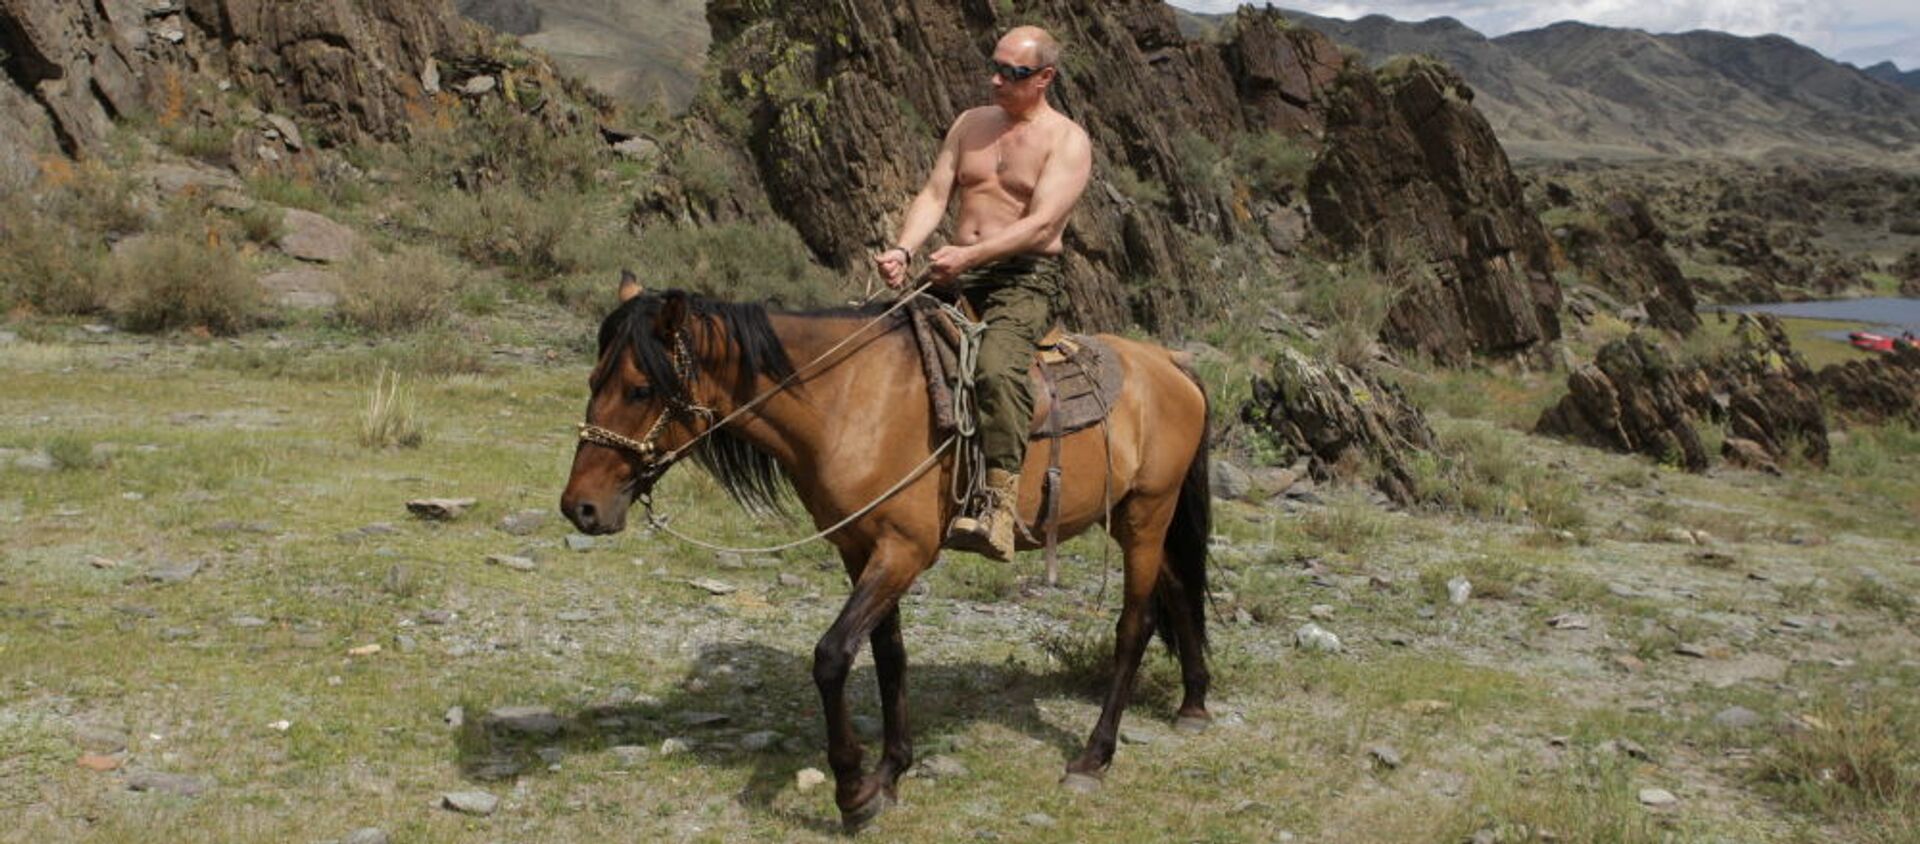 Председник Русије Владимир Путин јаше коња - Sputnik Србија, 1920, 09.03.2020